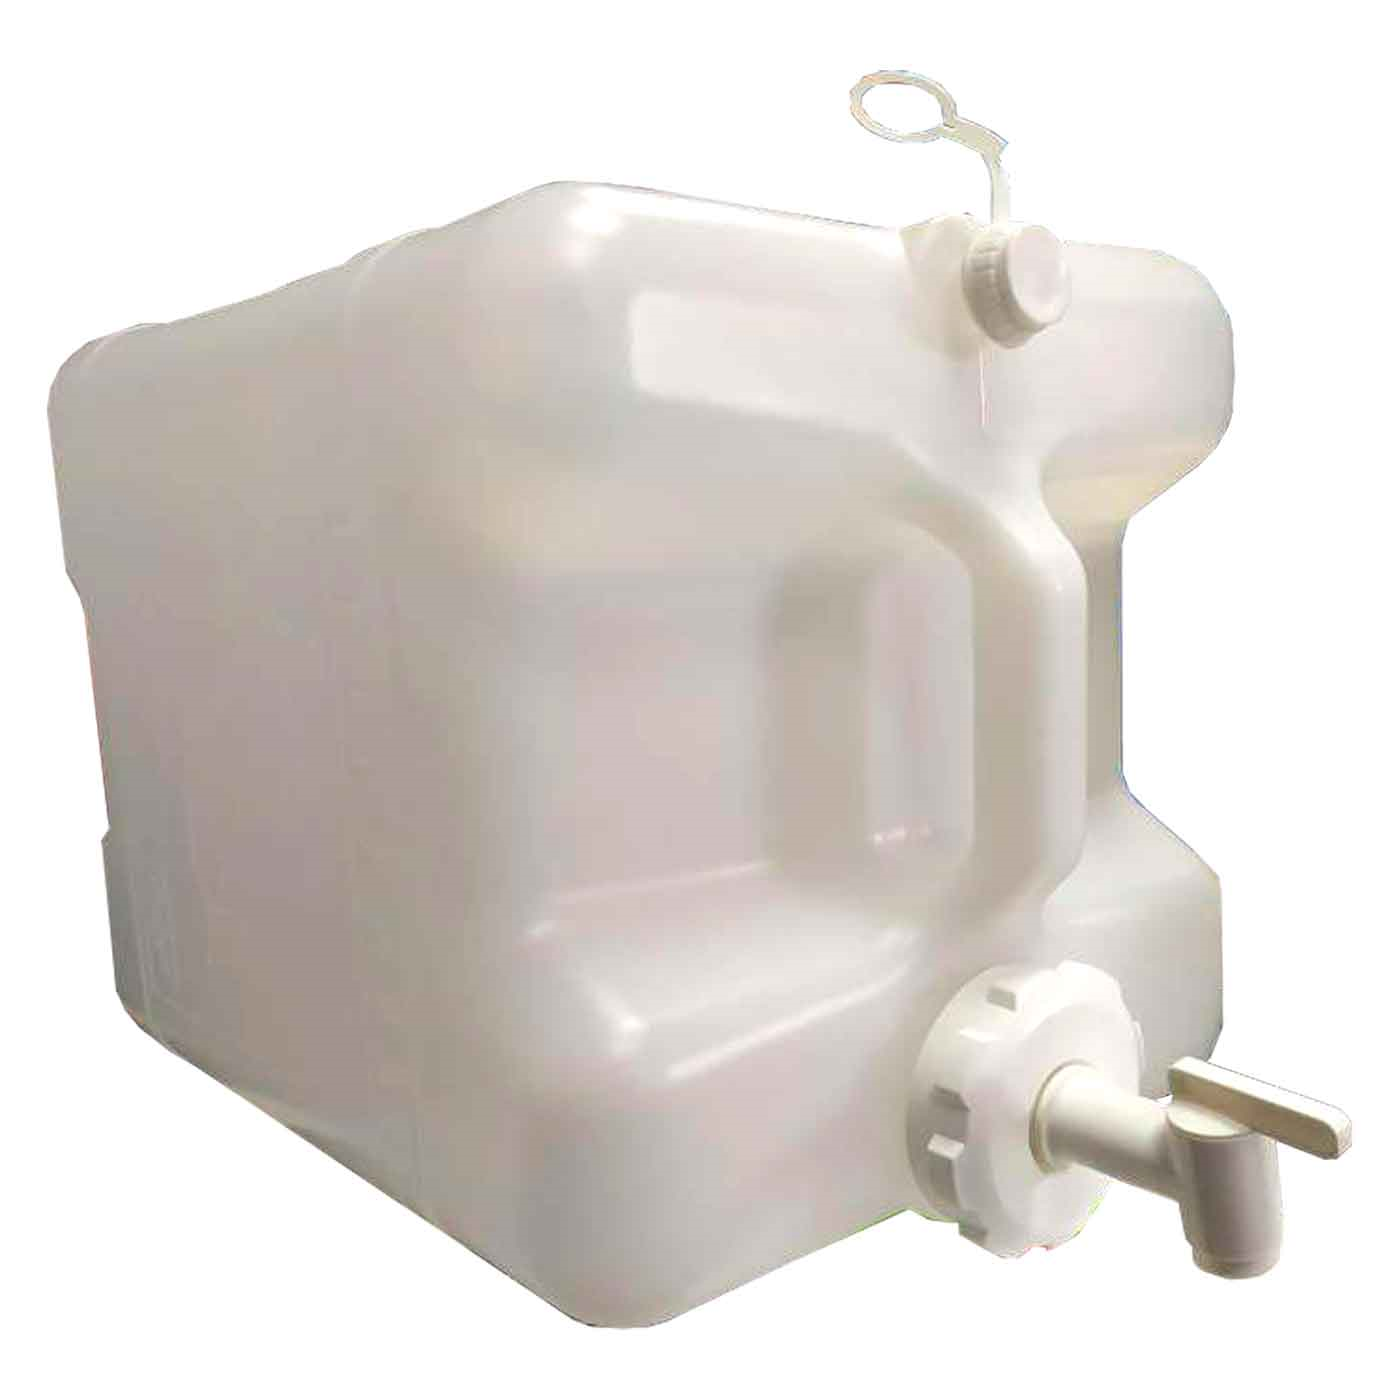 Tradineur - Cubo de basura de plástico, 7 litros, incluye tapa y